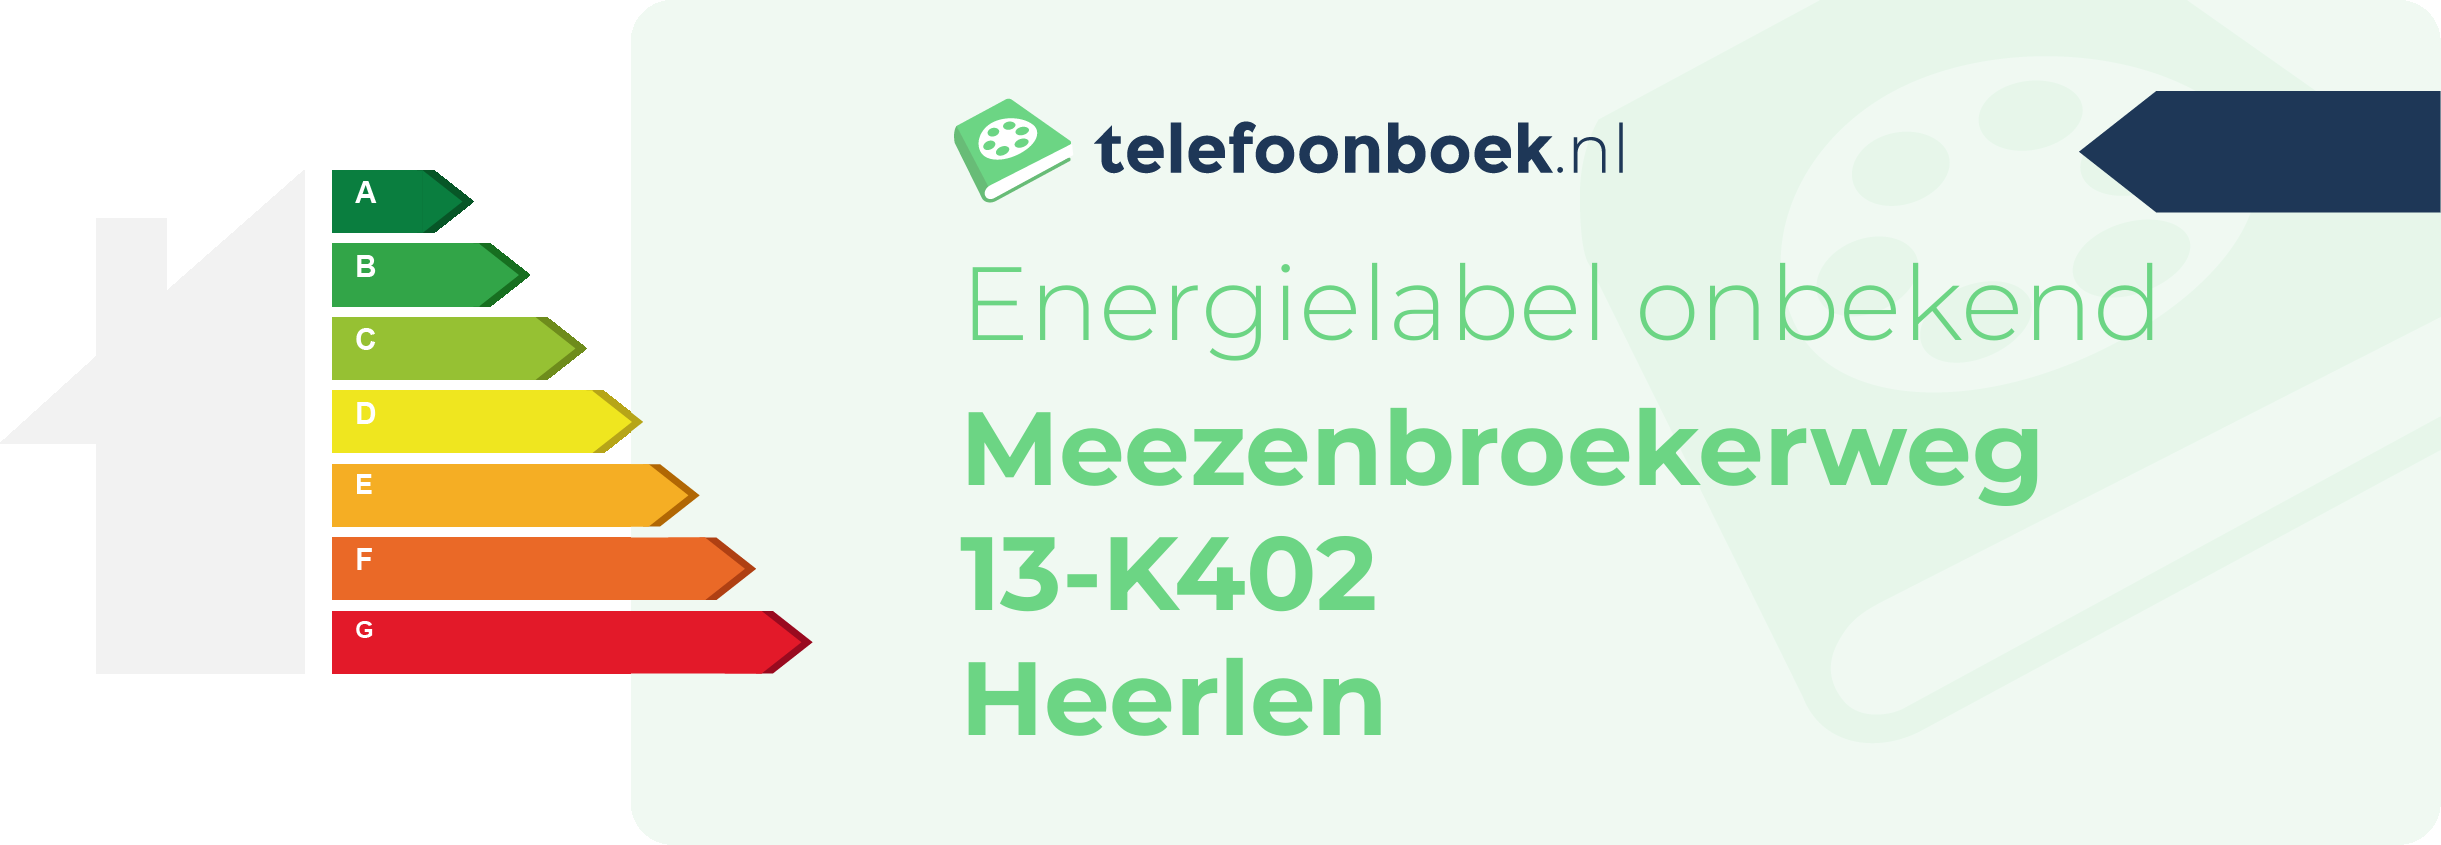 Energielabel Meezenbroekerweg 13-K402 Heerlen